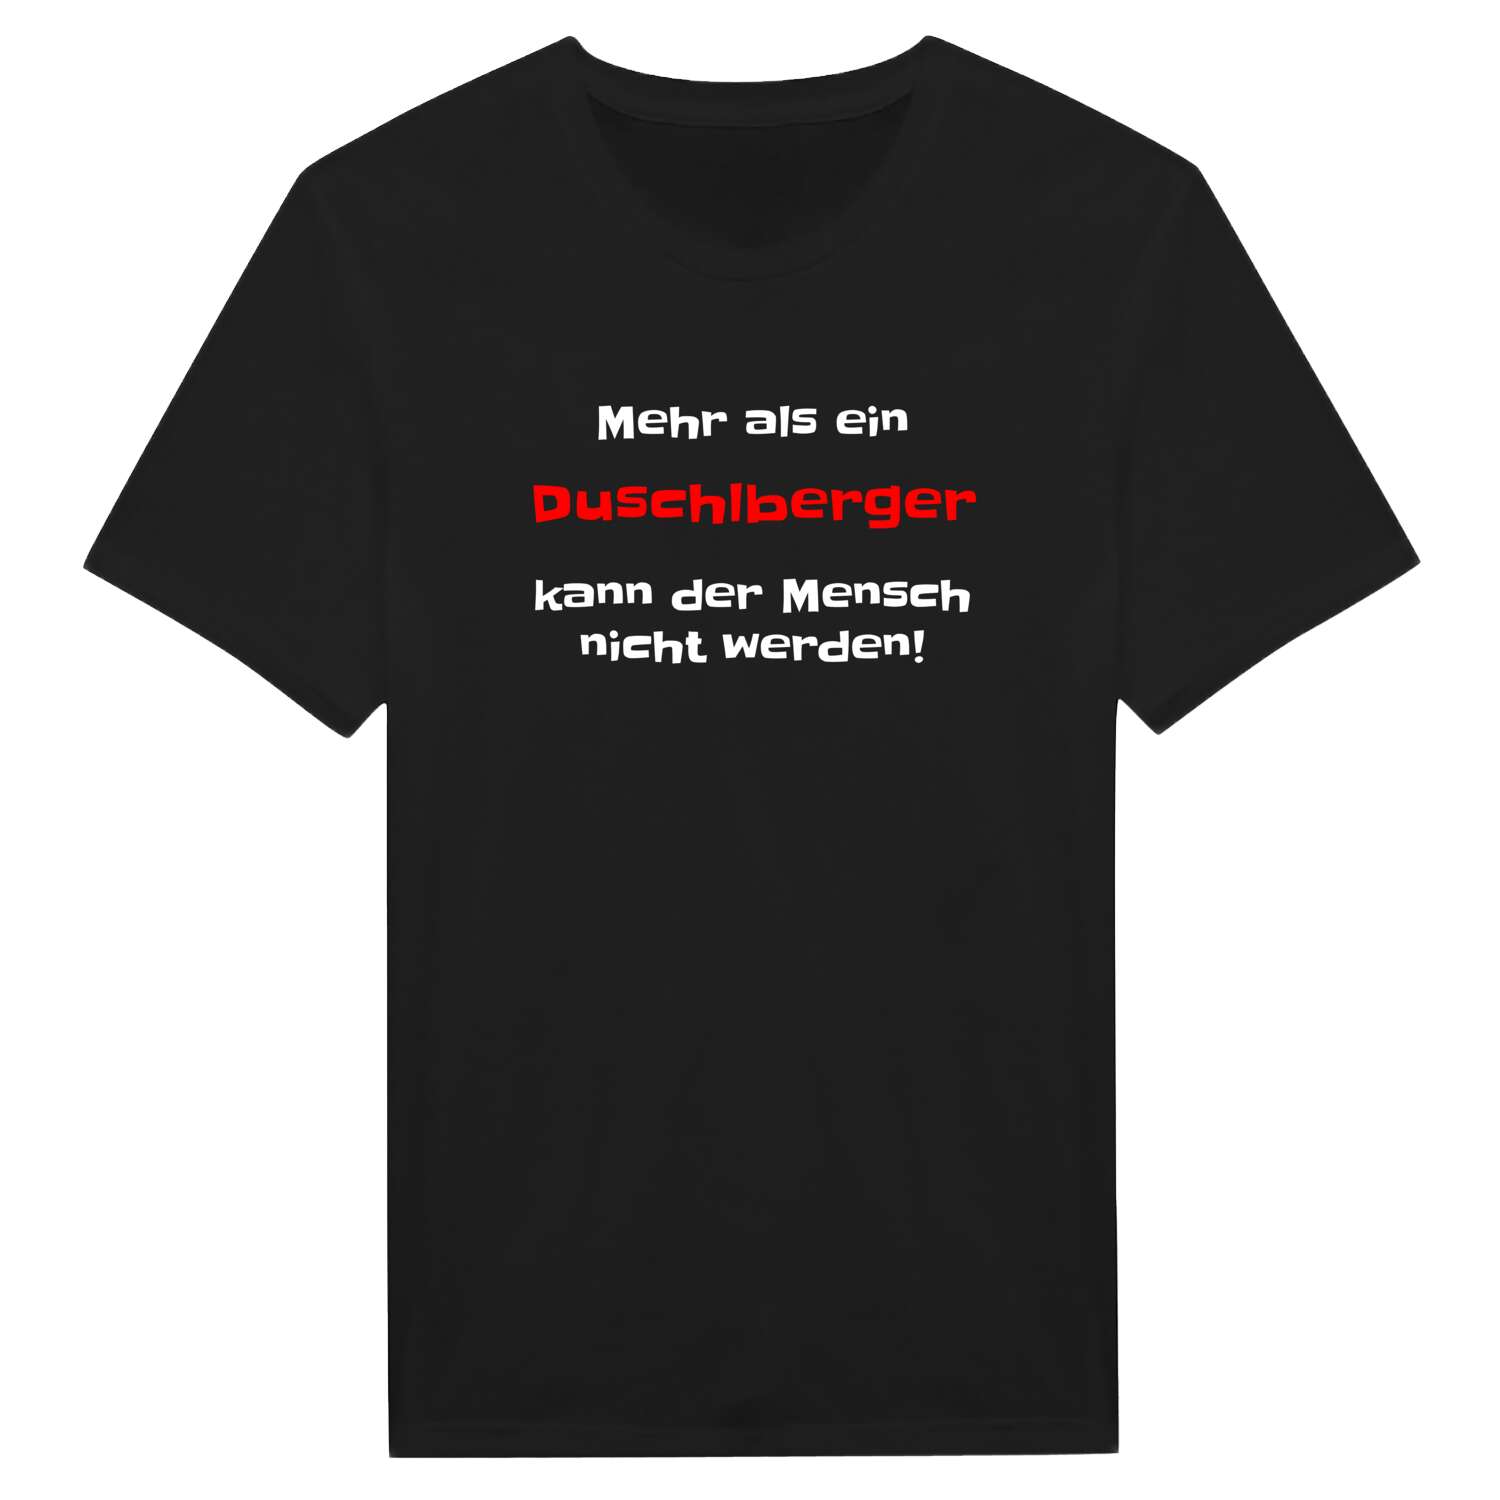 Duschlberg T-Shirt »Mehr als ein«